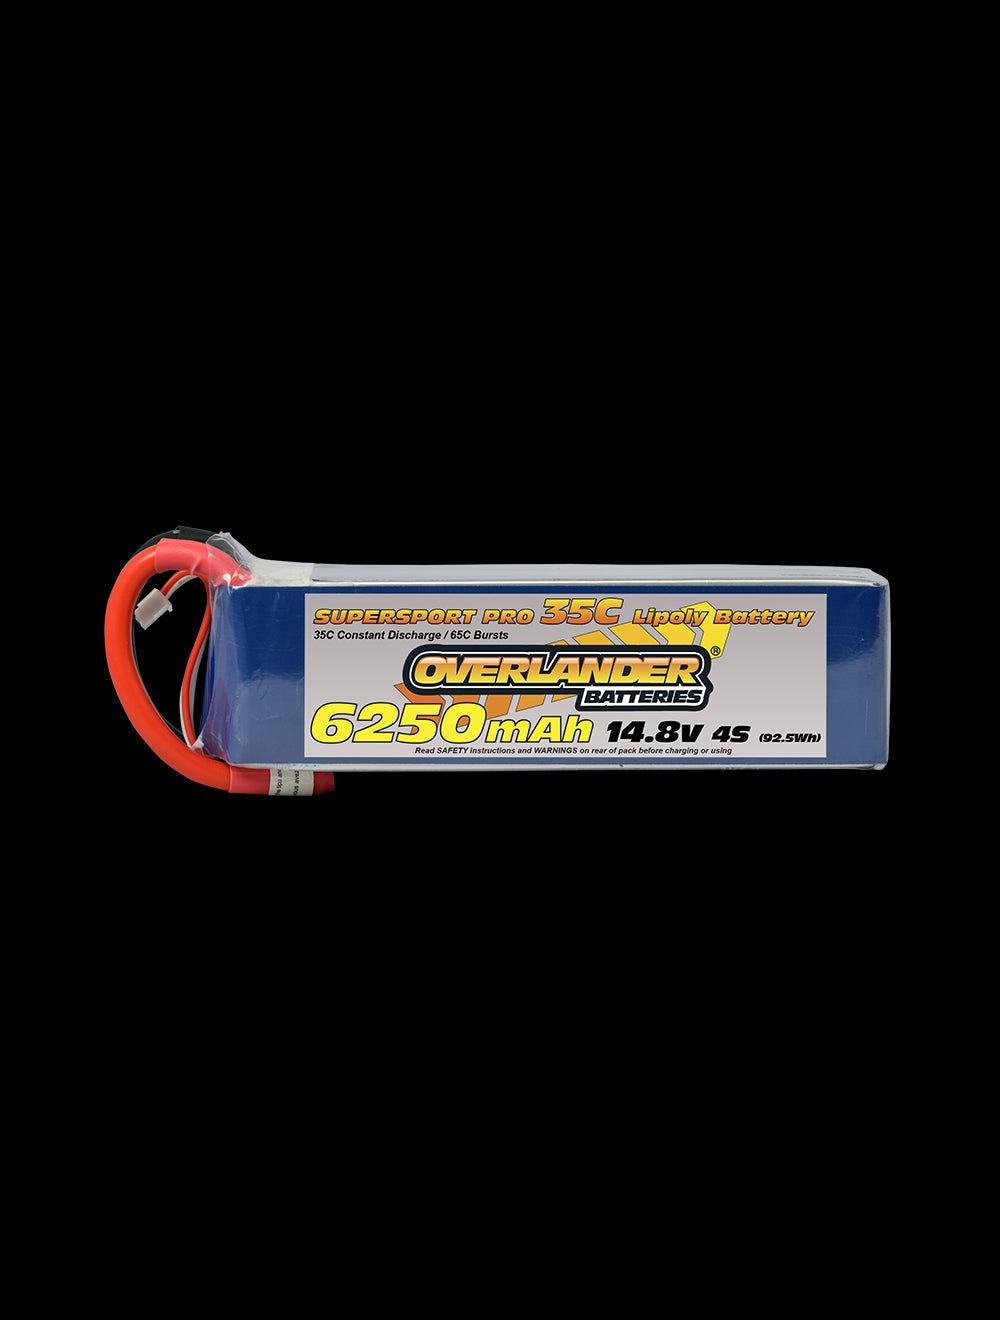 Overlander 6250mAh 14.8V 4S 35C Supersport Pro LiPo Battery - EC5 Connector 2770